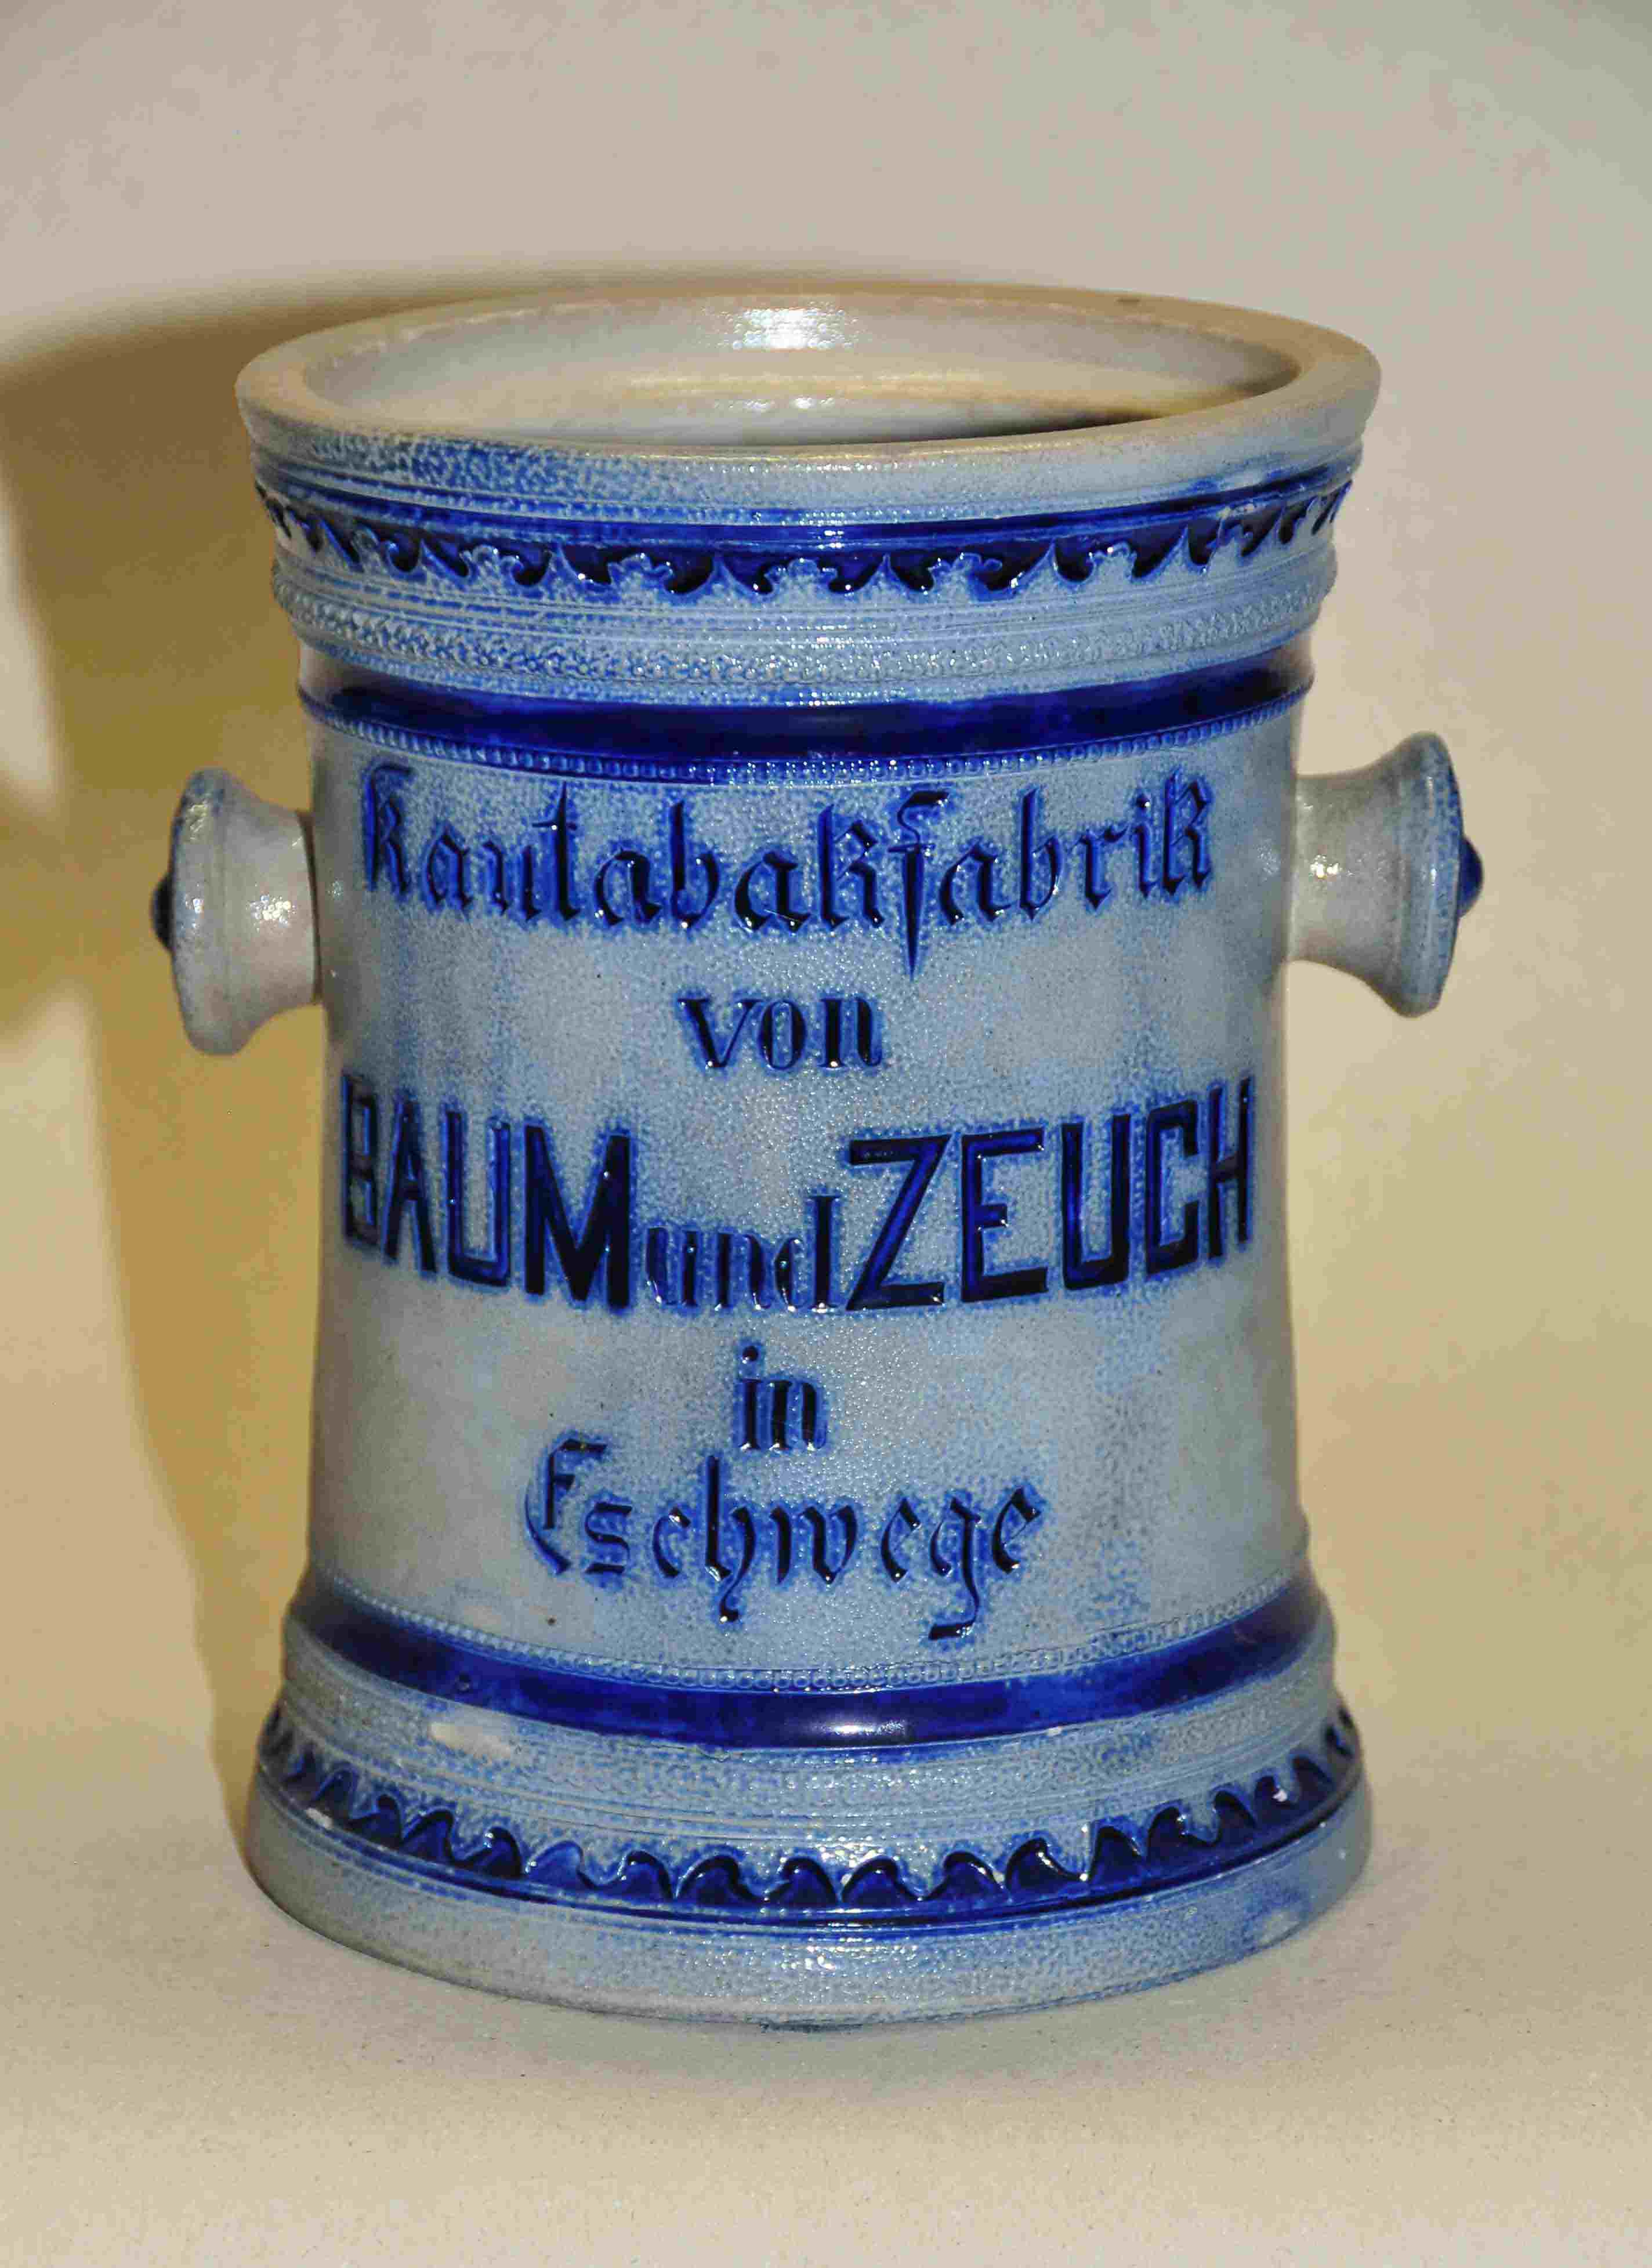 Baum & Zeuch Kautabakfabrik 